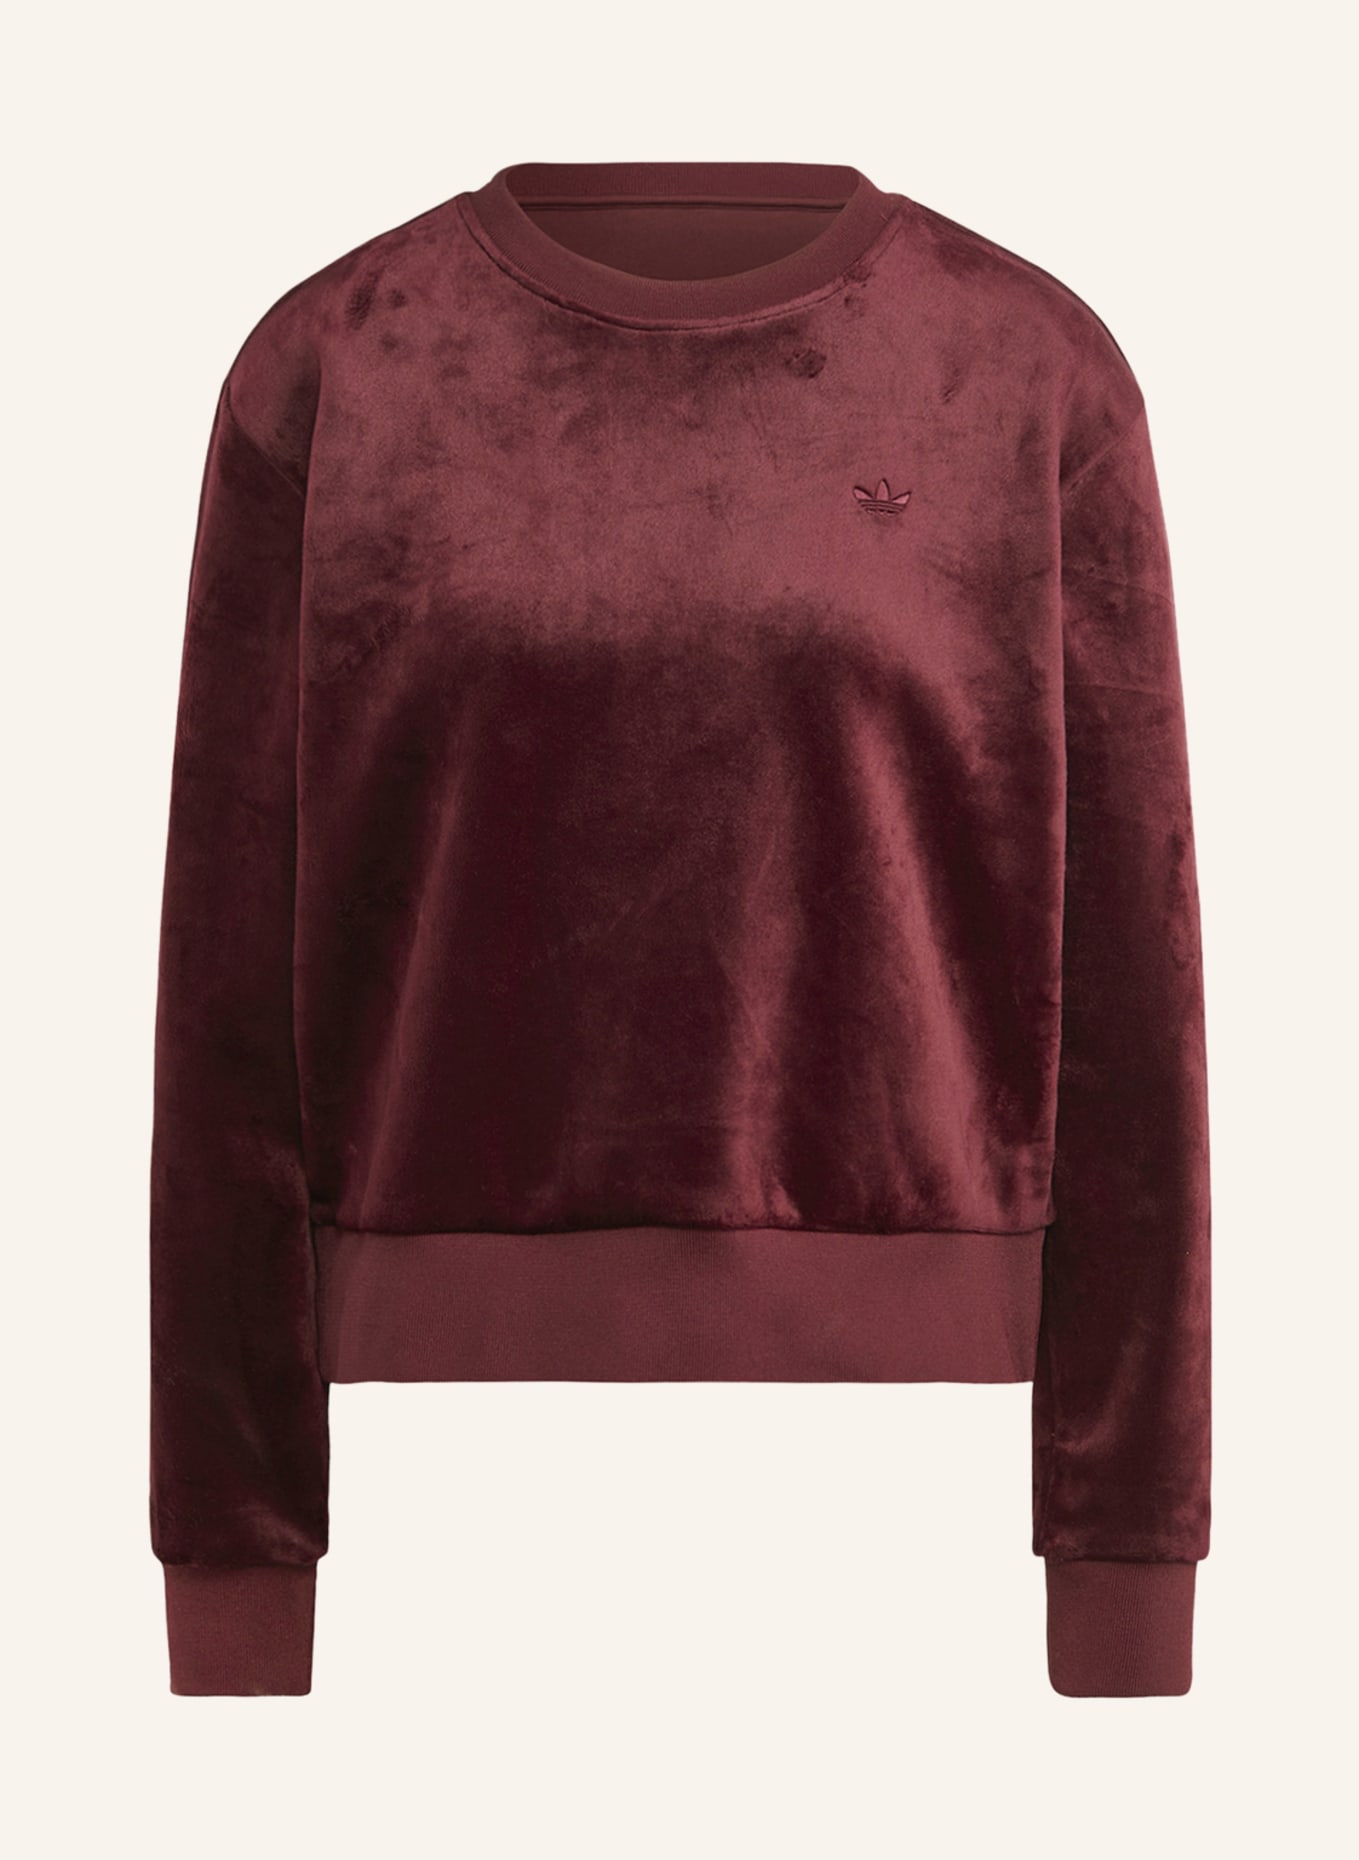 adidas Originals Sweatshirt VELVET aus Samt, Farbe: DUNKELROT (Bild 1)